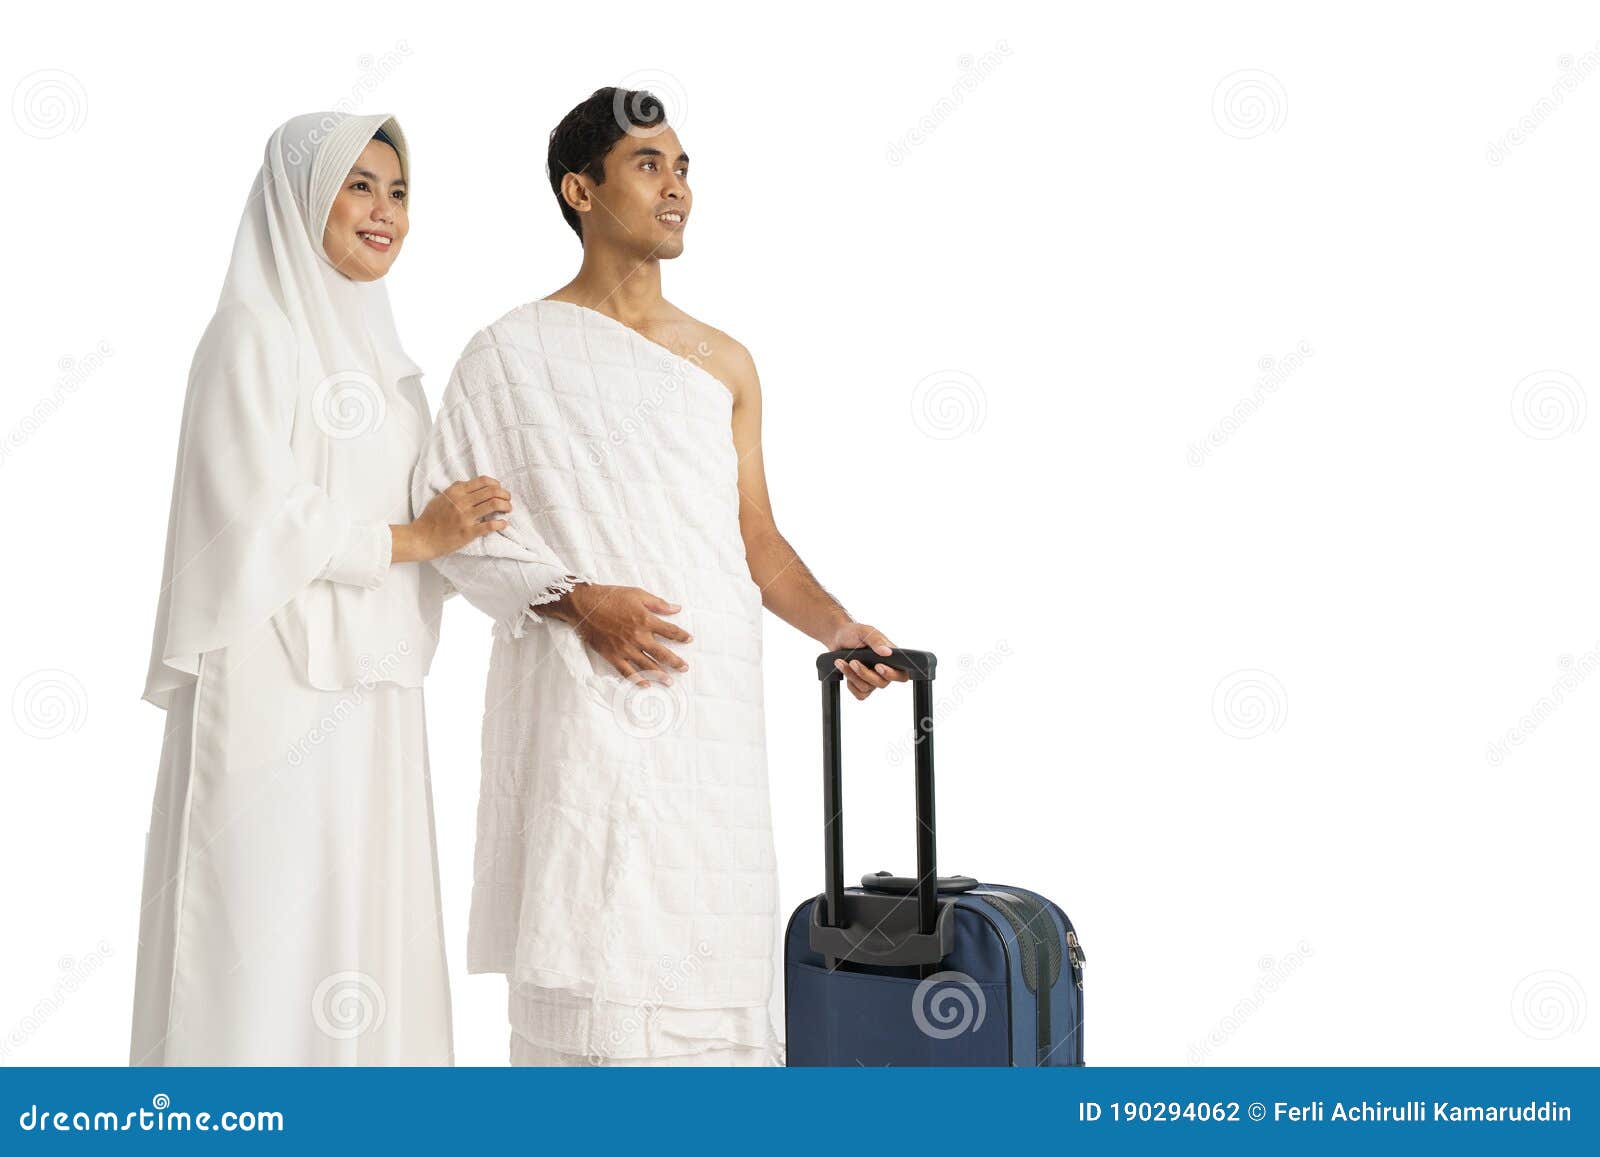 量身定做 2016穆斯林婚纱 回族结婚礼服 婚礼服装批发/一件代发-阿里巴巴